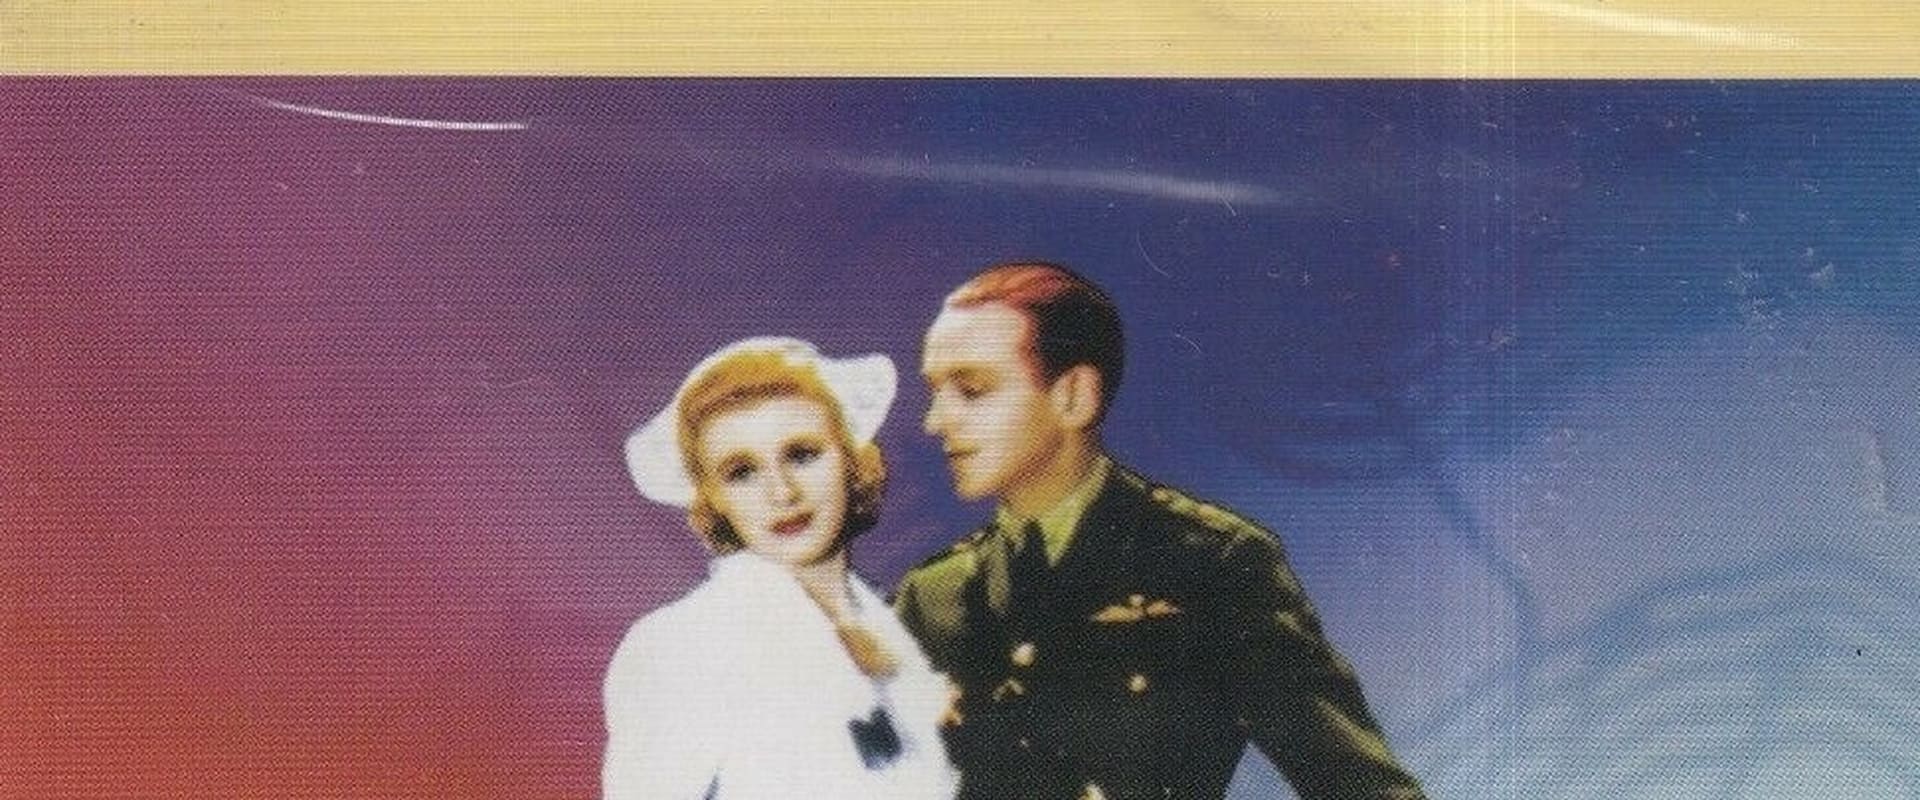 La vita di Vernon e Irene Castle (1939)